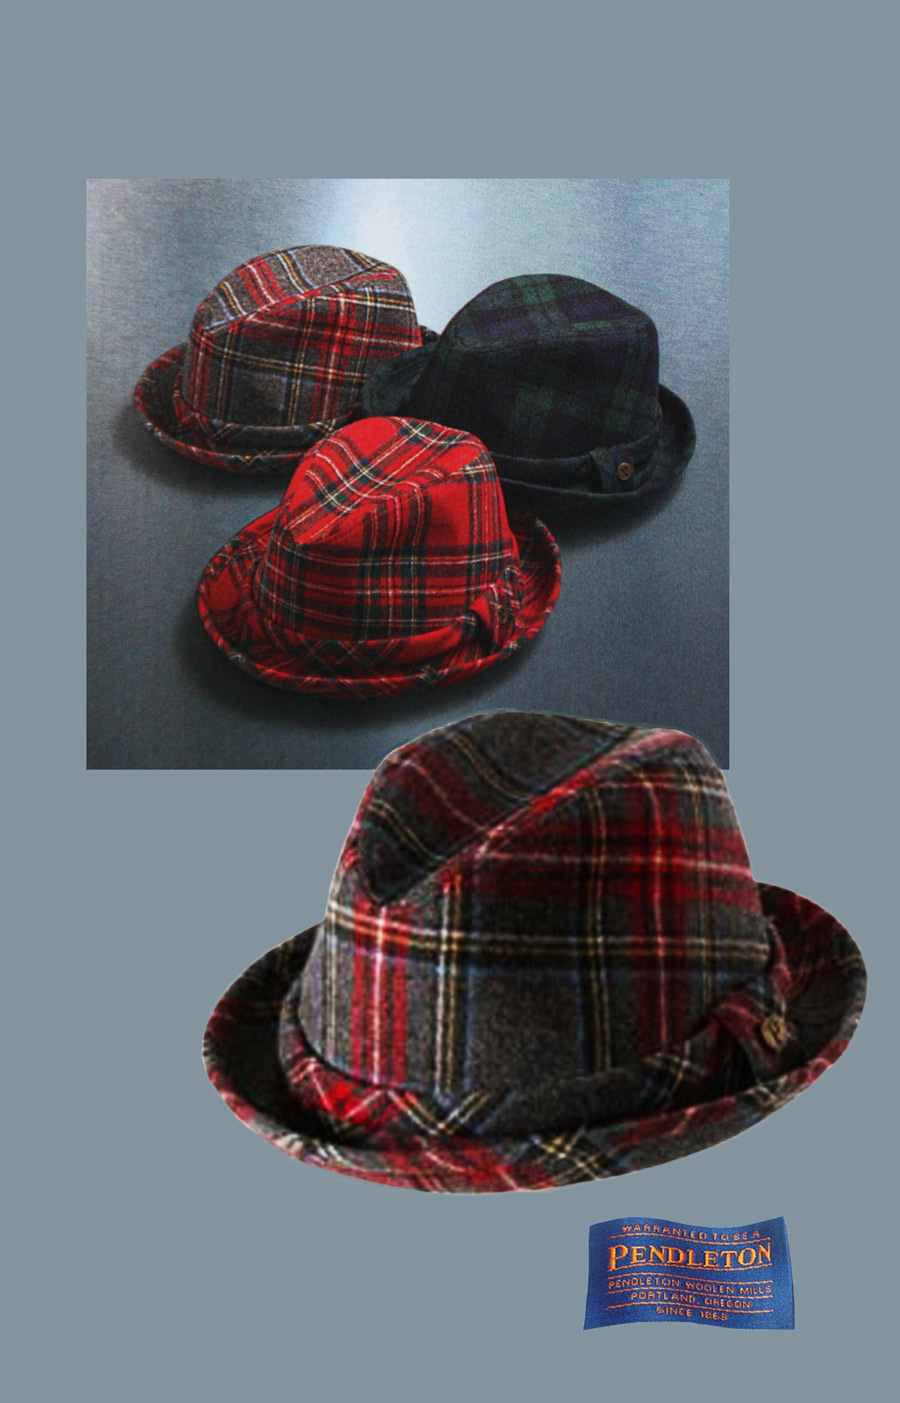 画像: ペンドルトン バージン ウールハット（チャコールスチュワートタータン）L/Pendleton Wool Hat Charcoal Stewart Tartan